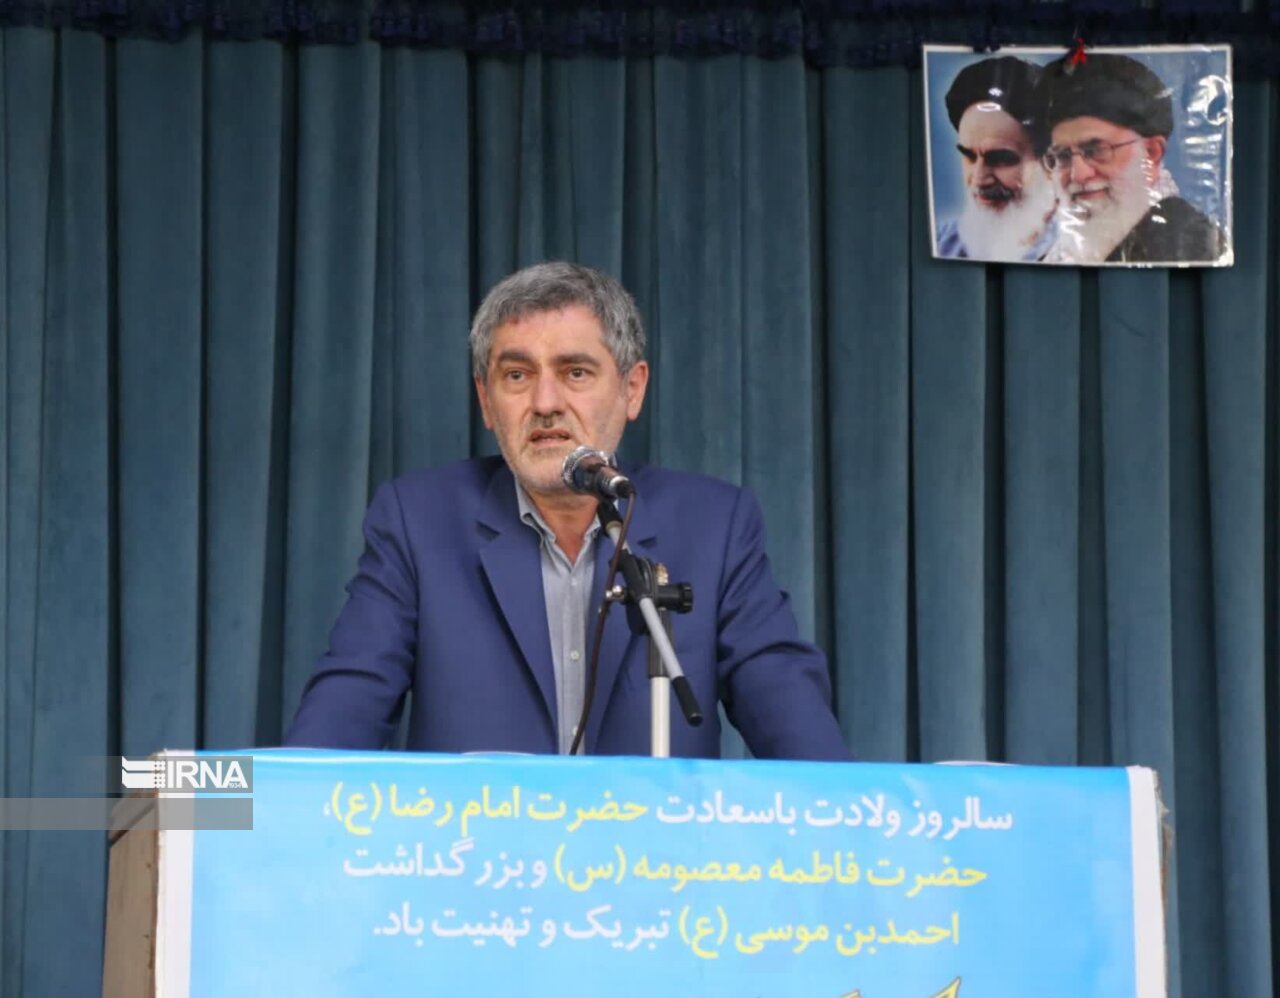 حضور استاندار فارس در جمع نمازگزاران و خبرهای خوب برای ساکنان شهر صدرا شیراز 